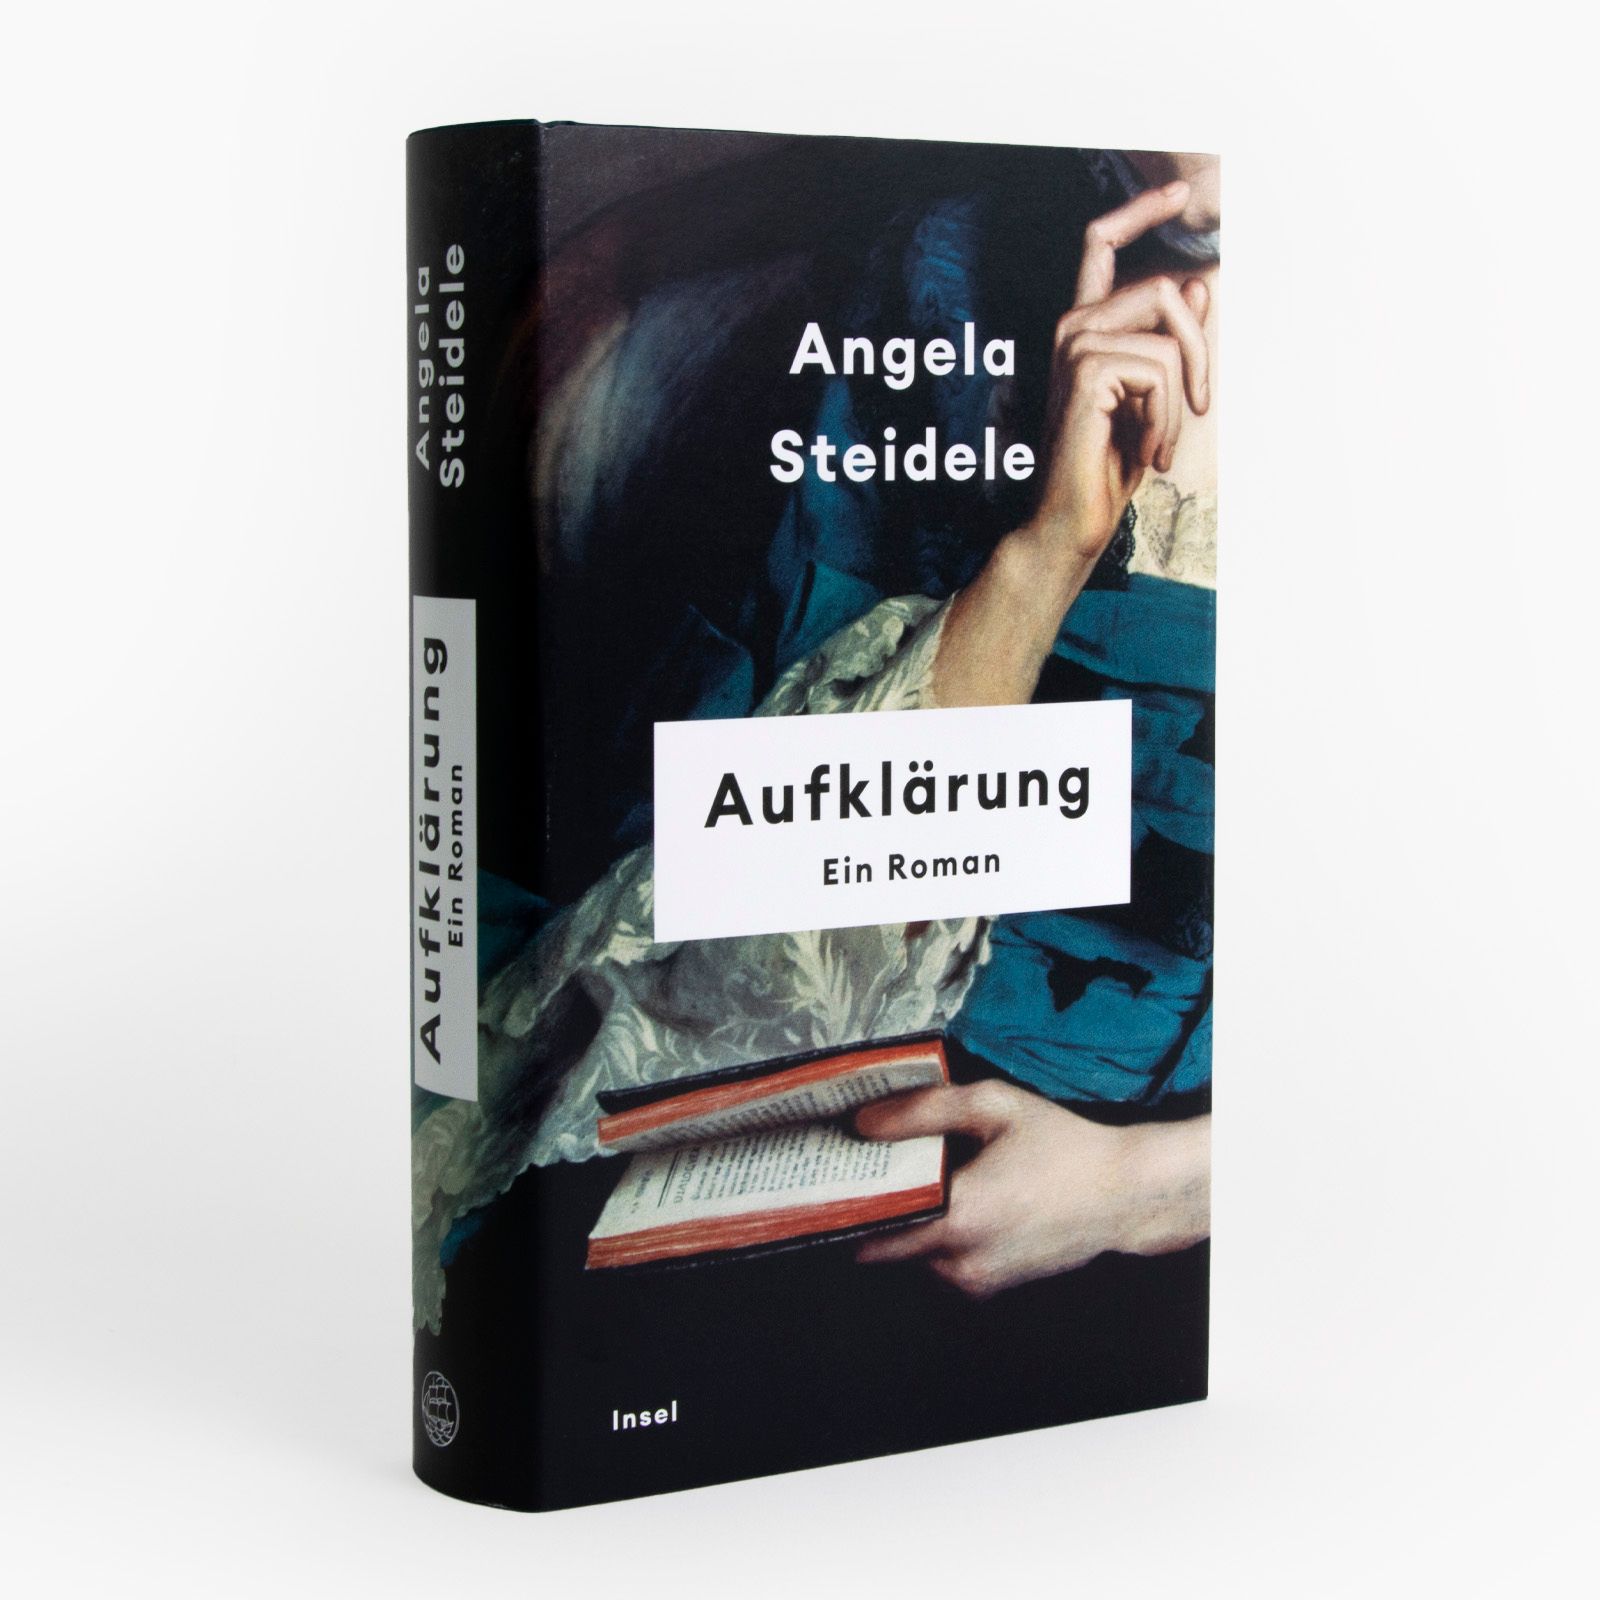 Angela Steideles Roman »Aufklärung« schräg von vorne